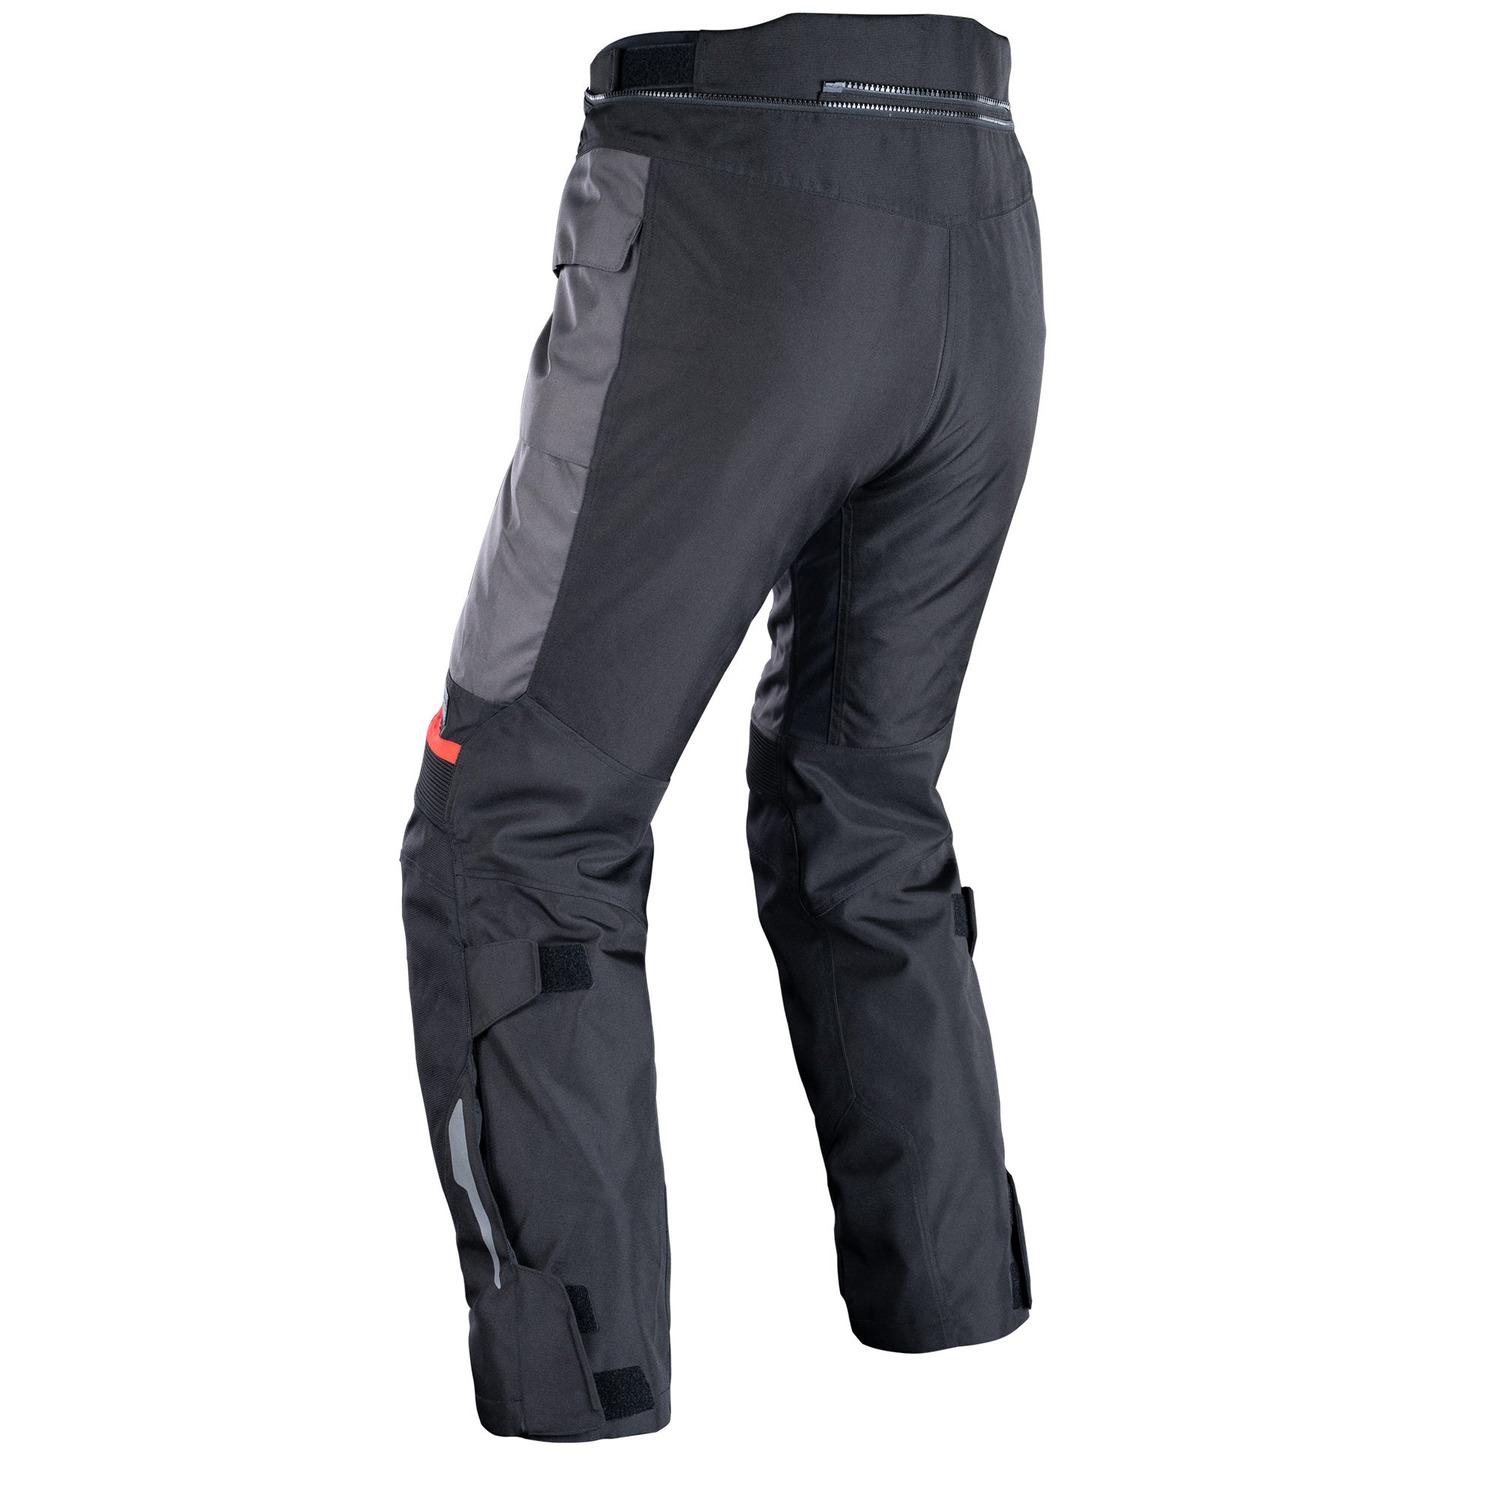 Obrázek produktu PRODLOUŽENÉ kalhoty ROCKLAND DRY2DRY™, OXFORD ADVANCED (šedé/černé/červené)